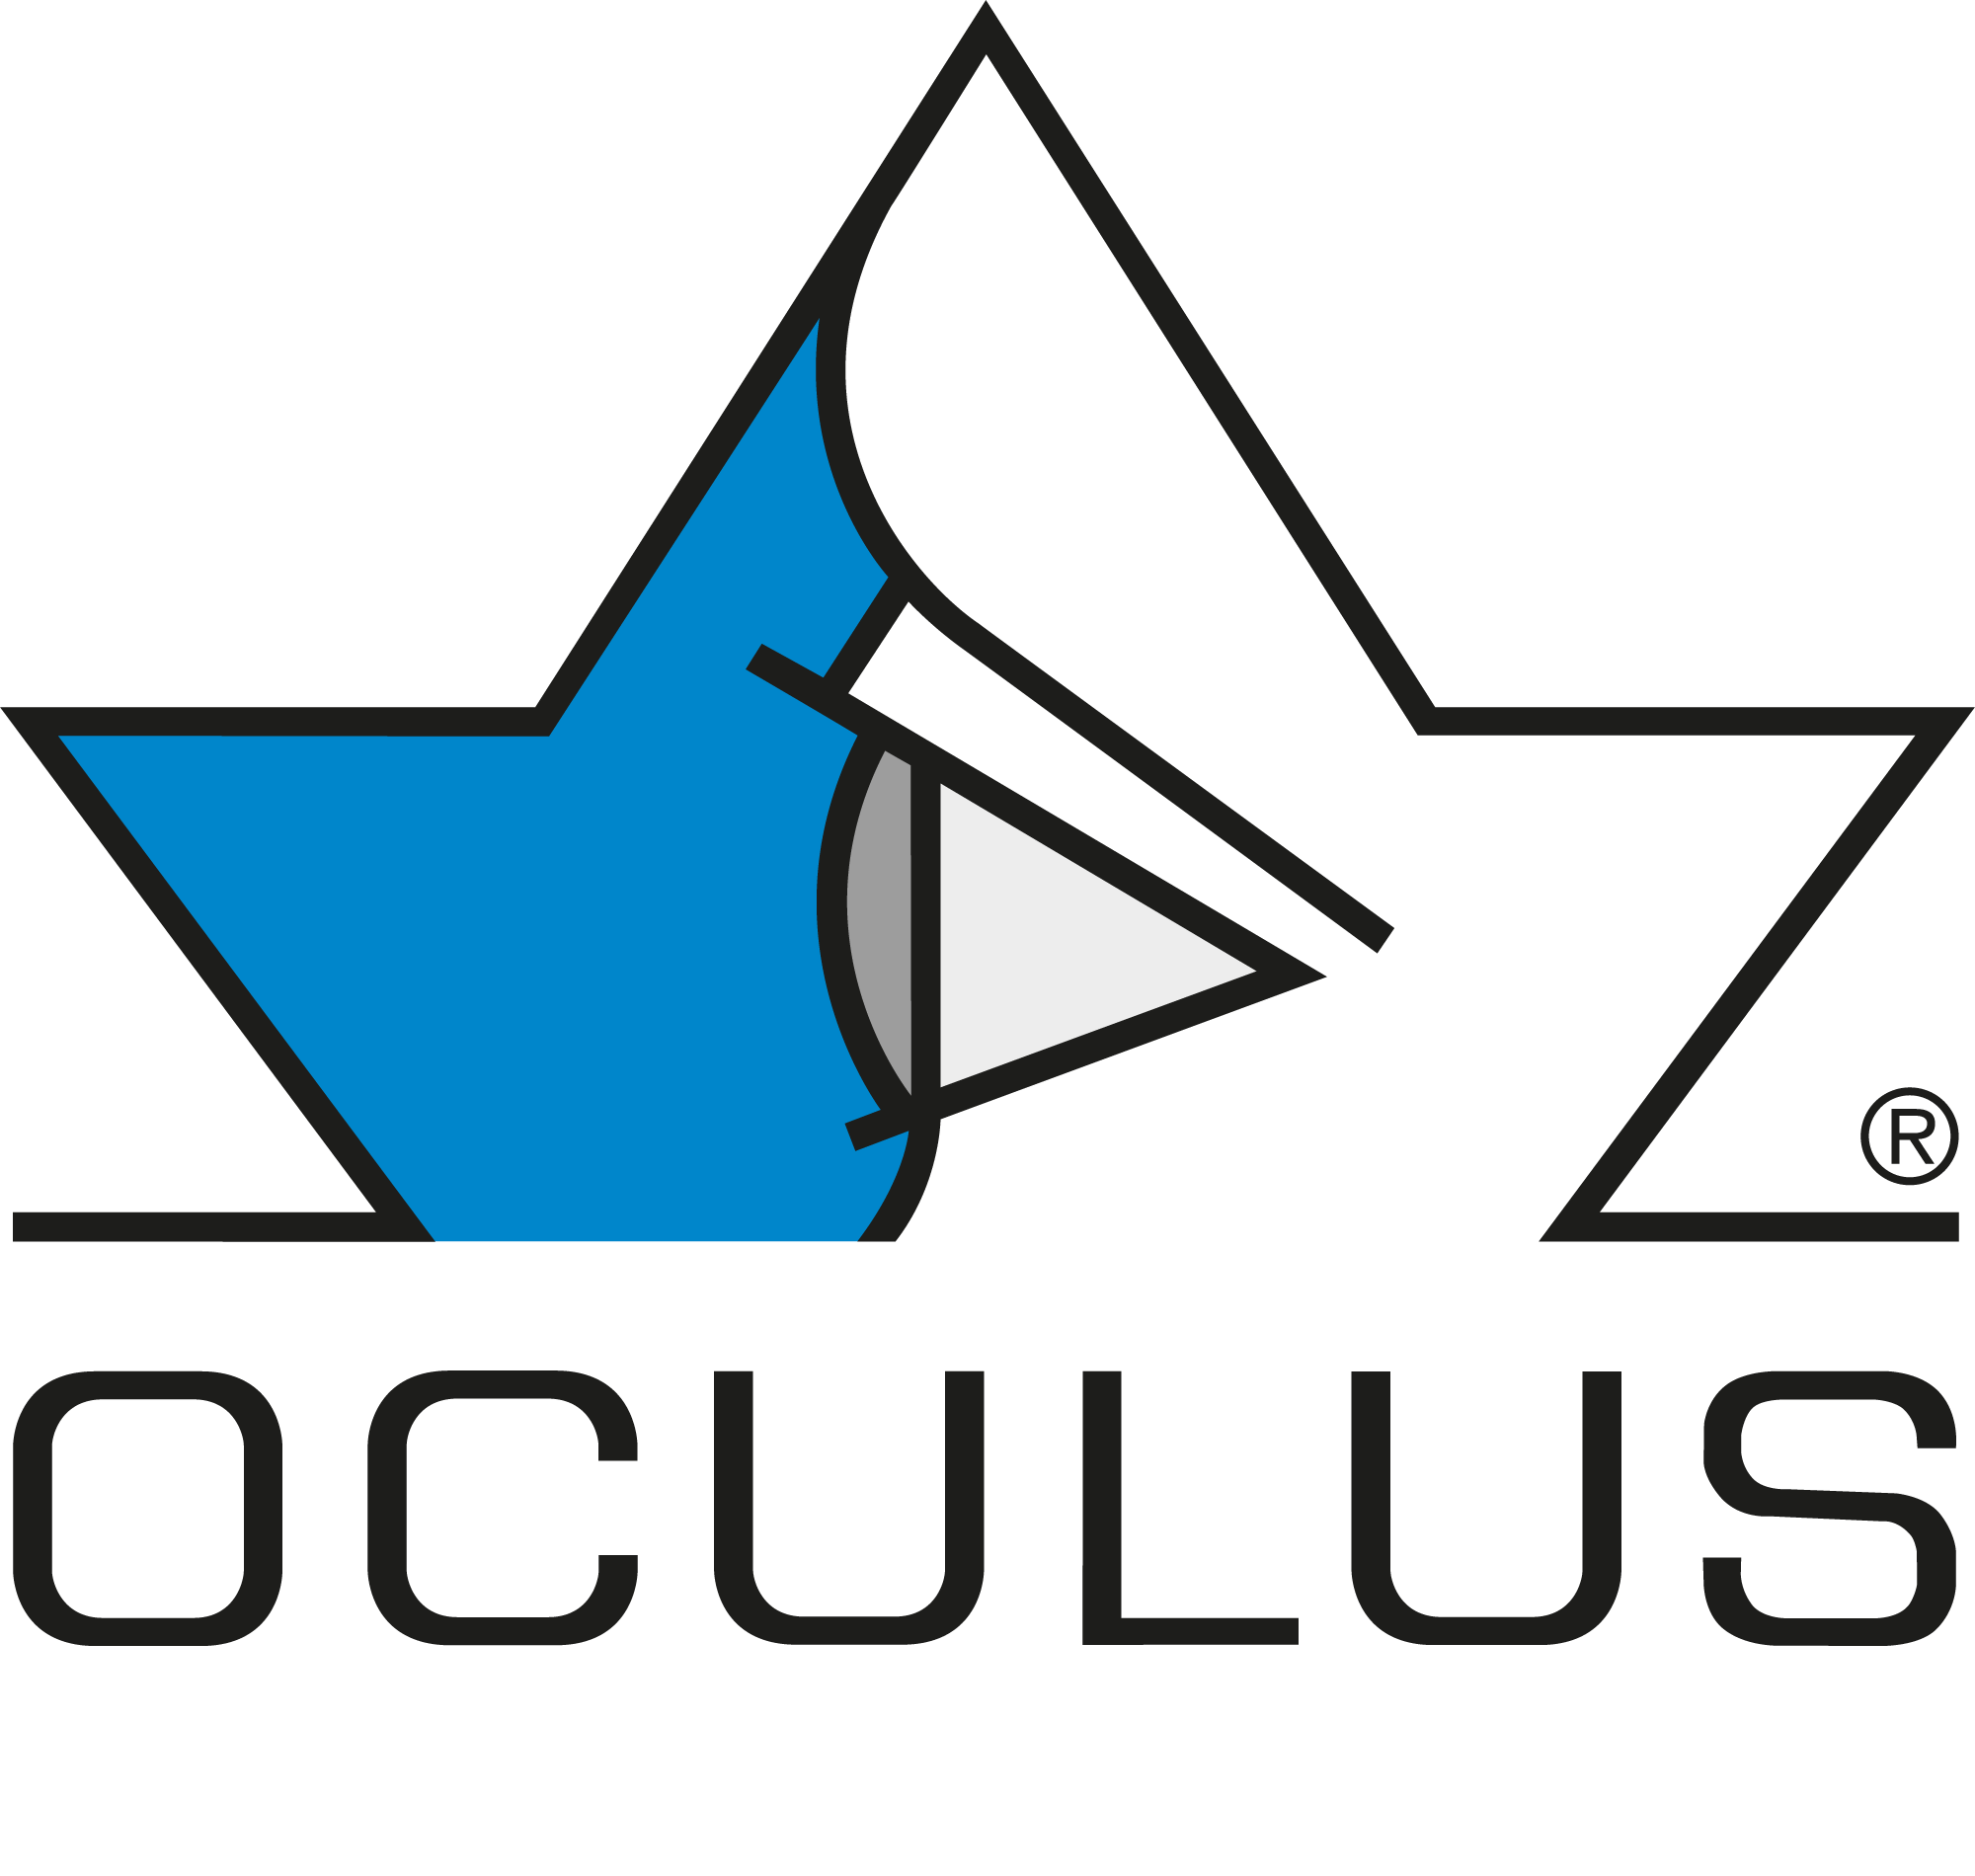 OCULUS-Kompakt-Logo - 4-color - rgb-vertical aligned.png